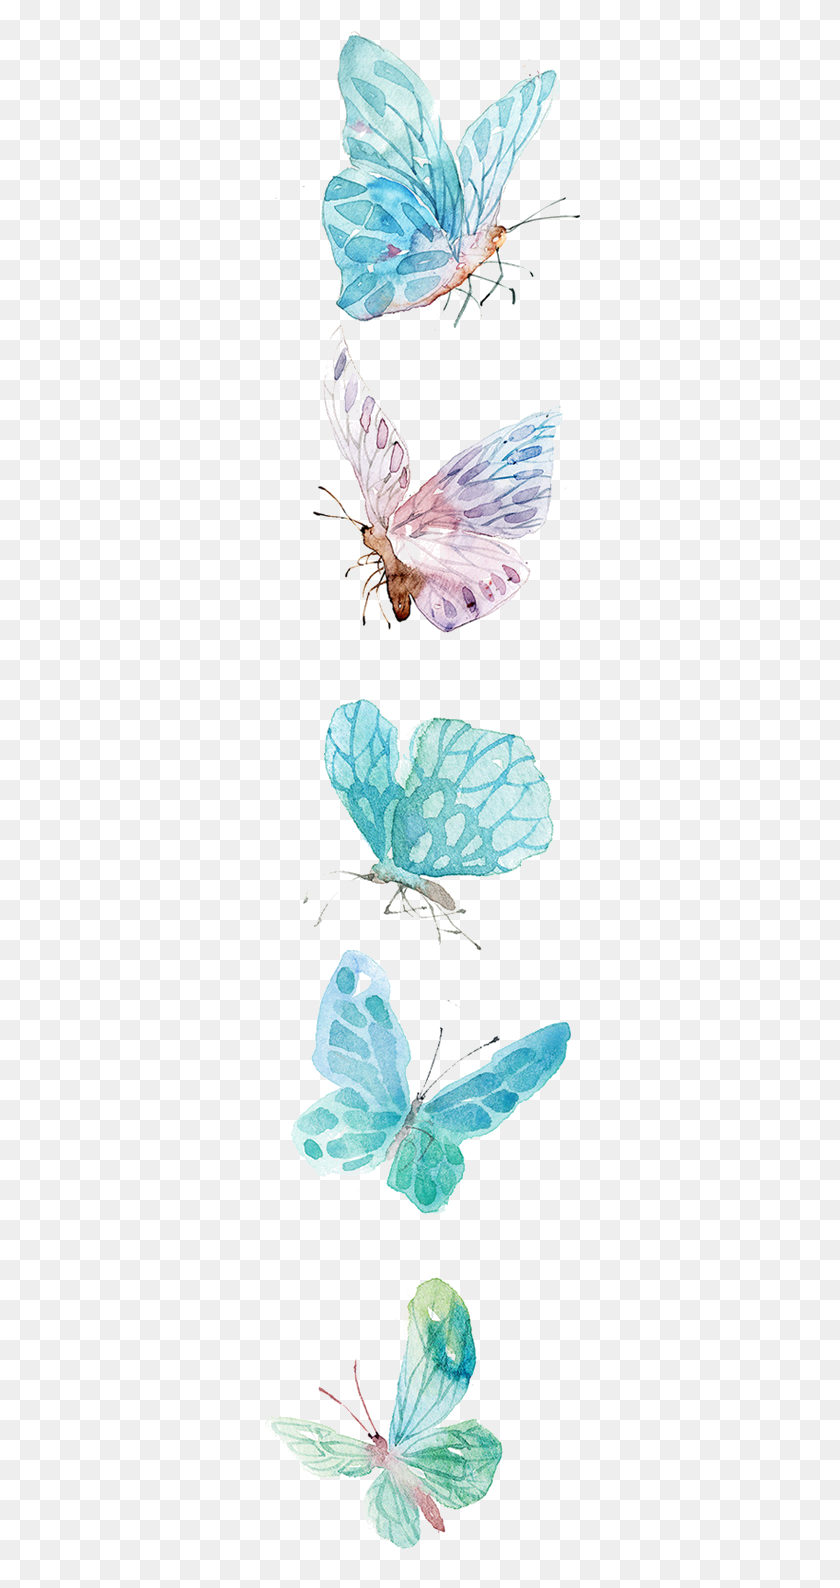 323x1528 Png Изображение - Imagenes De Azules Con Mariposa, Насекомое, Беспозвоночное, Животное, Hd Png Скачать